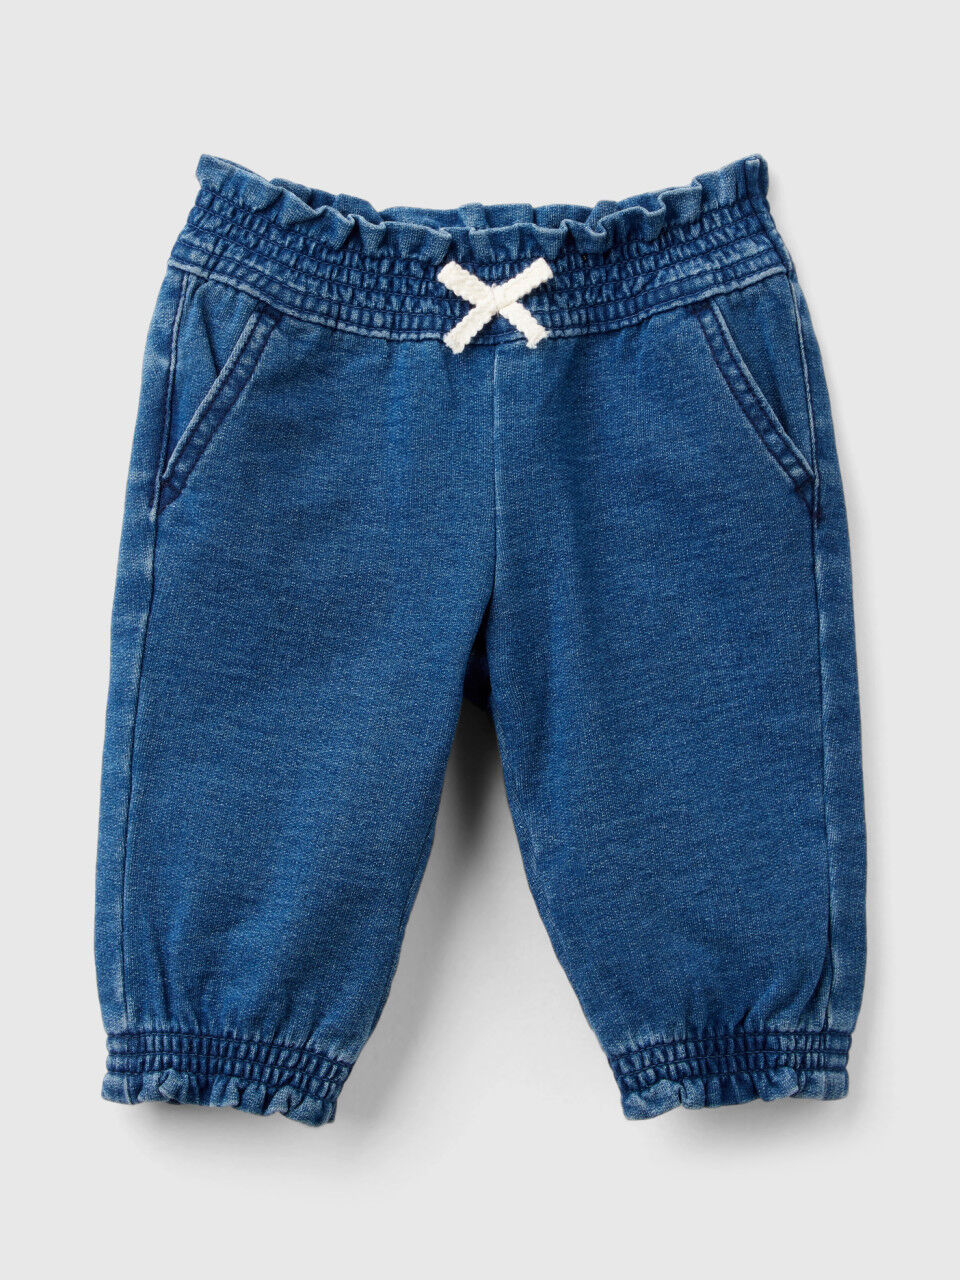 Children Jeans Winter Fleece | Winter Denim Clothing Boys | Fleece Jeans  Childrenprice - Kids Jeans - Aliexpress